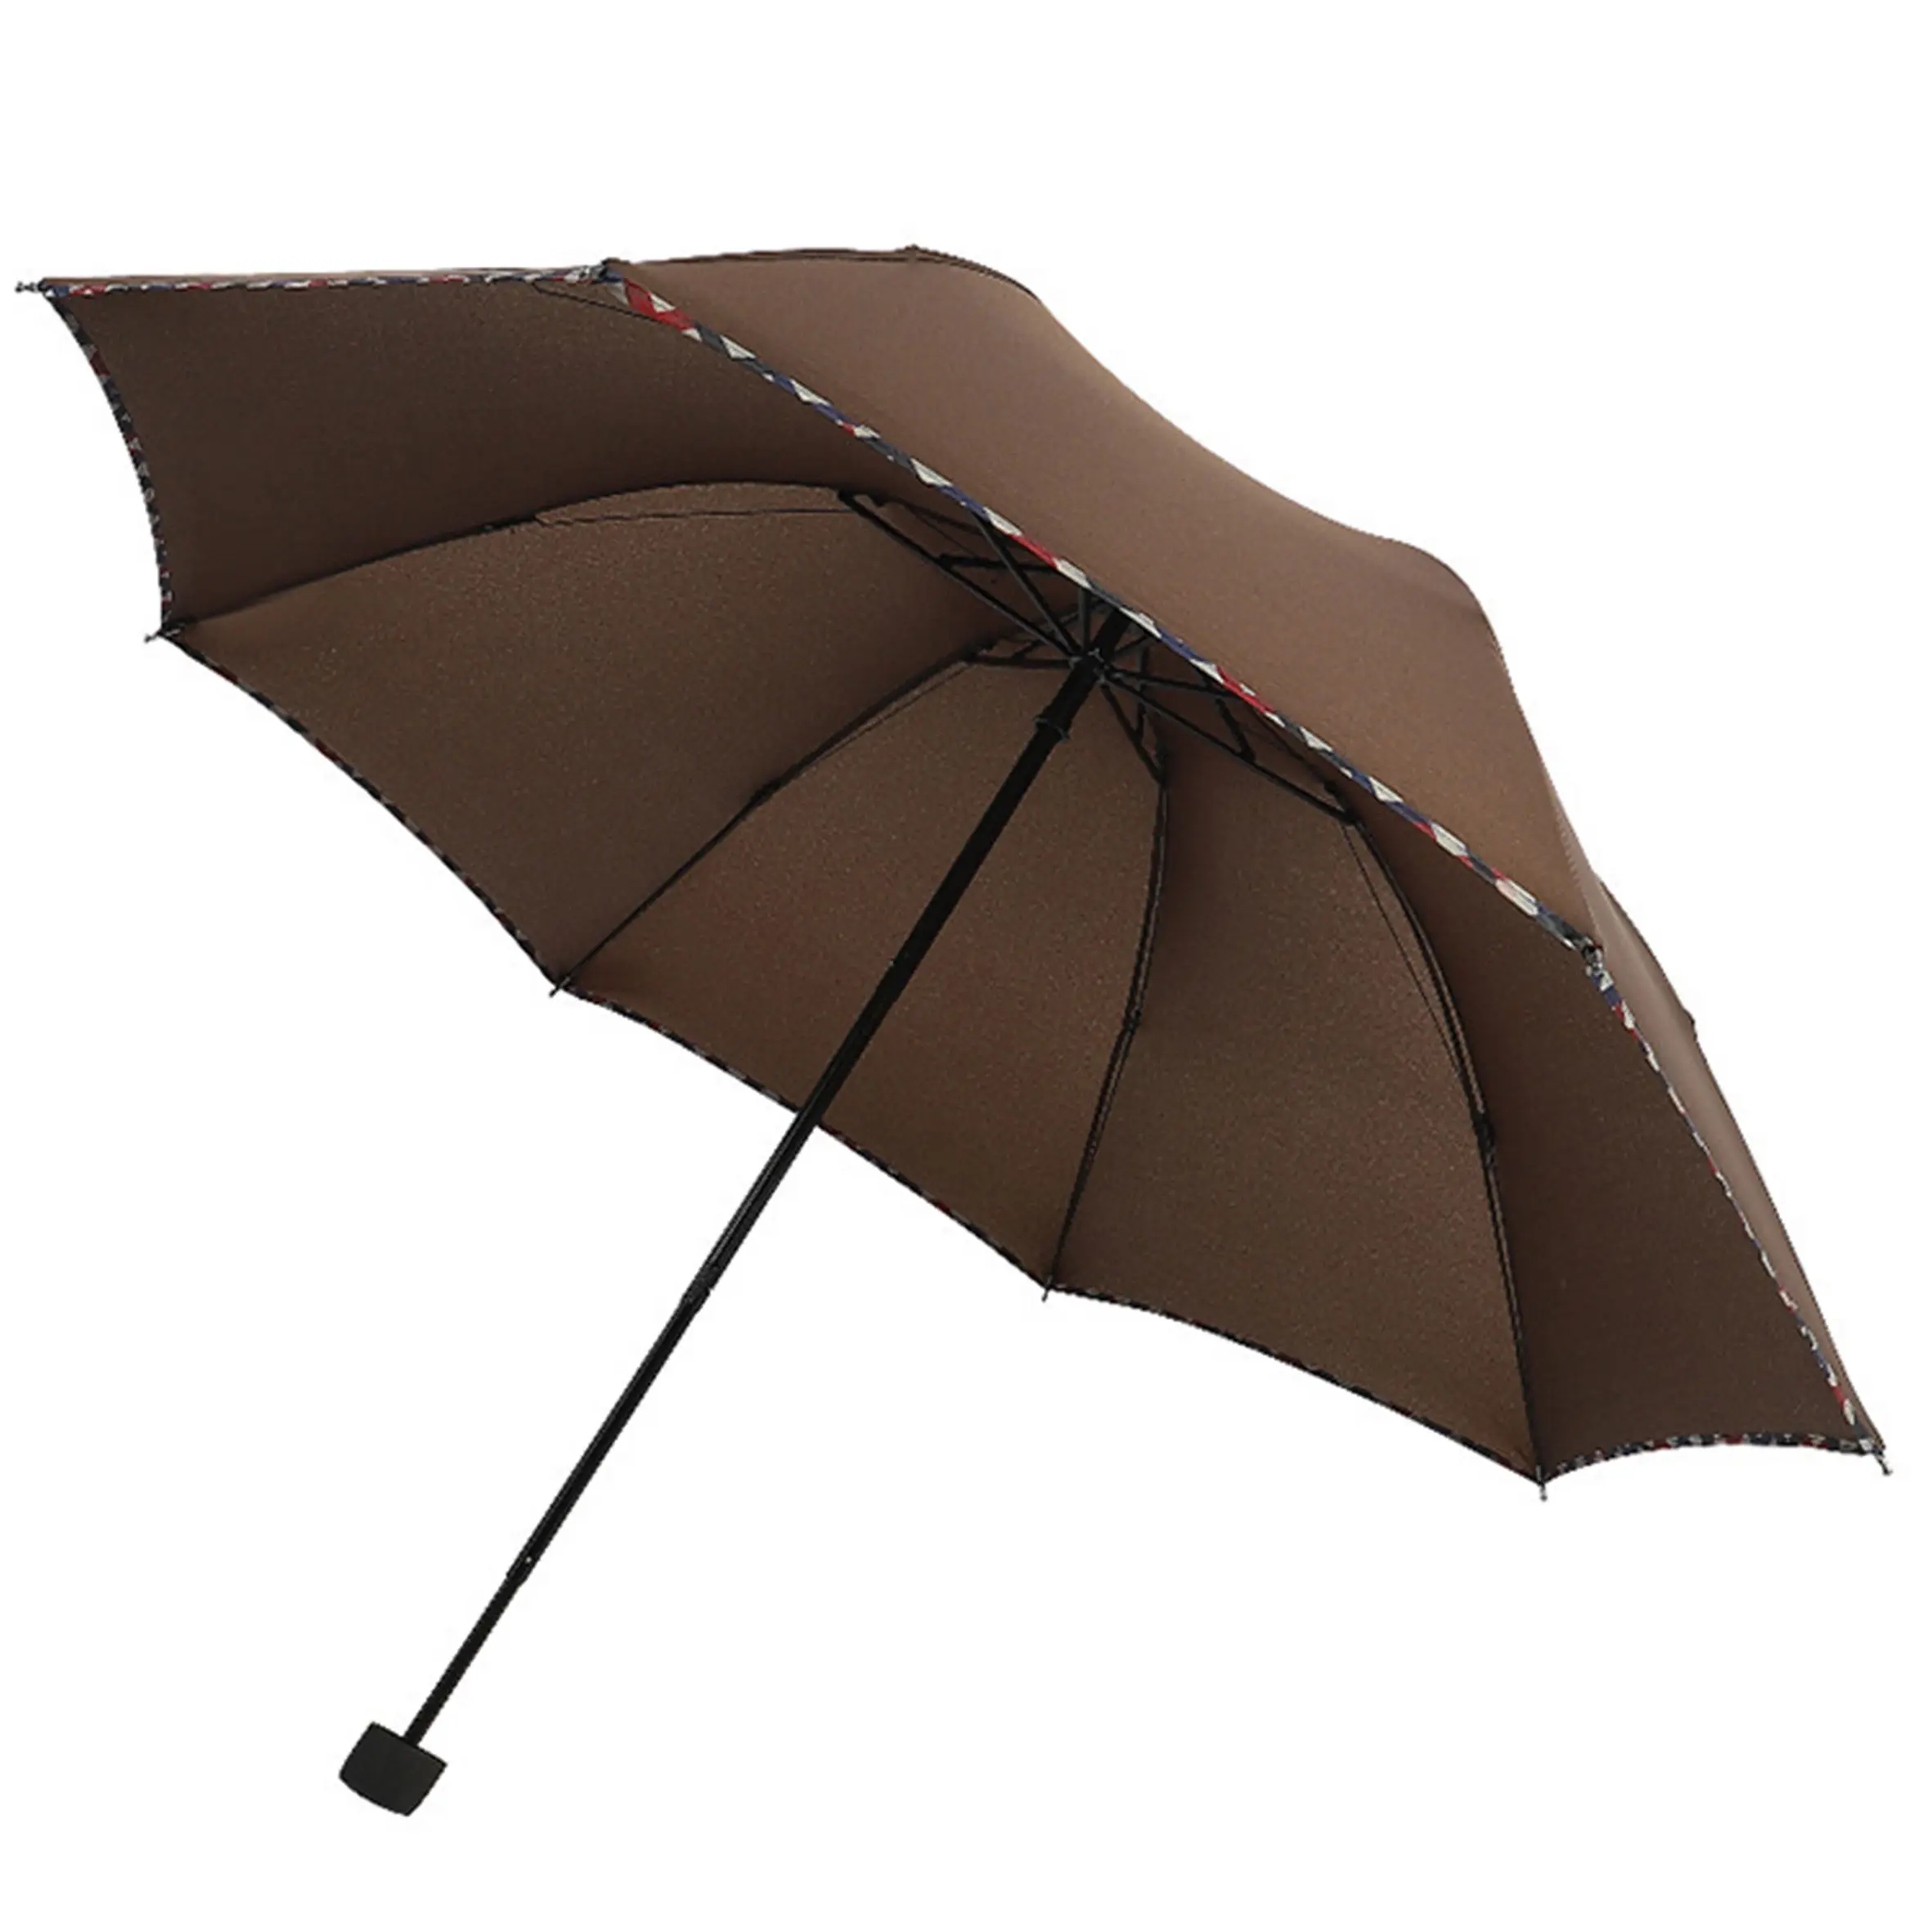 Toptan envanter düşük fiyat şemsiye olabilir, LOGO yapılabilir reklam şemsiyesi yağmur çift kullanım/